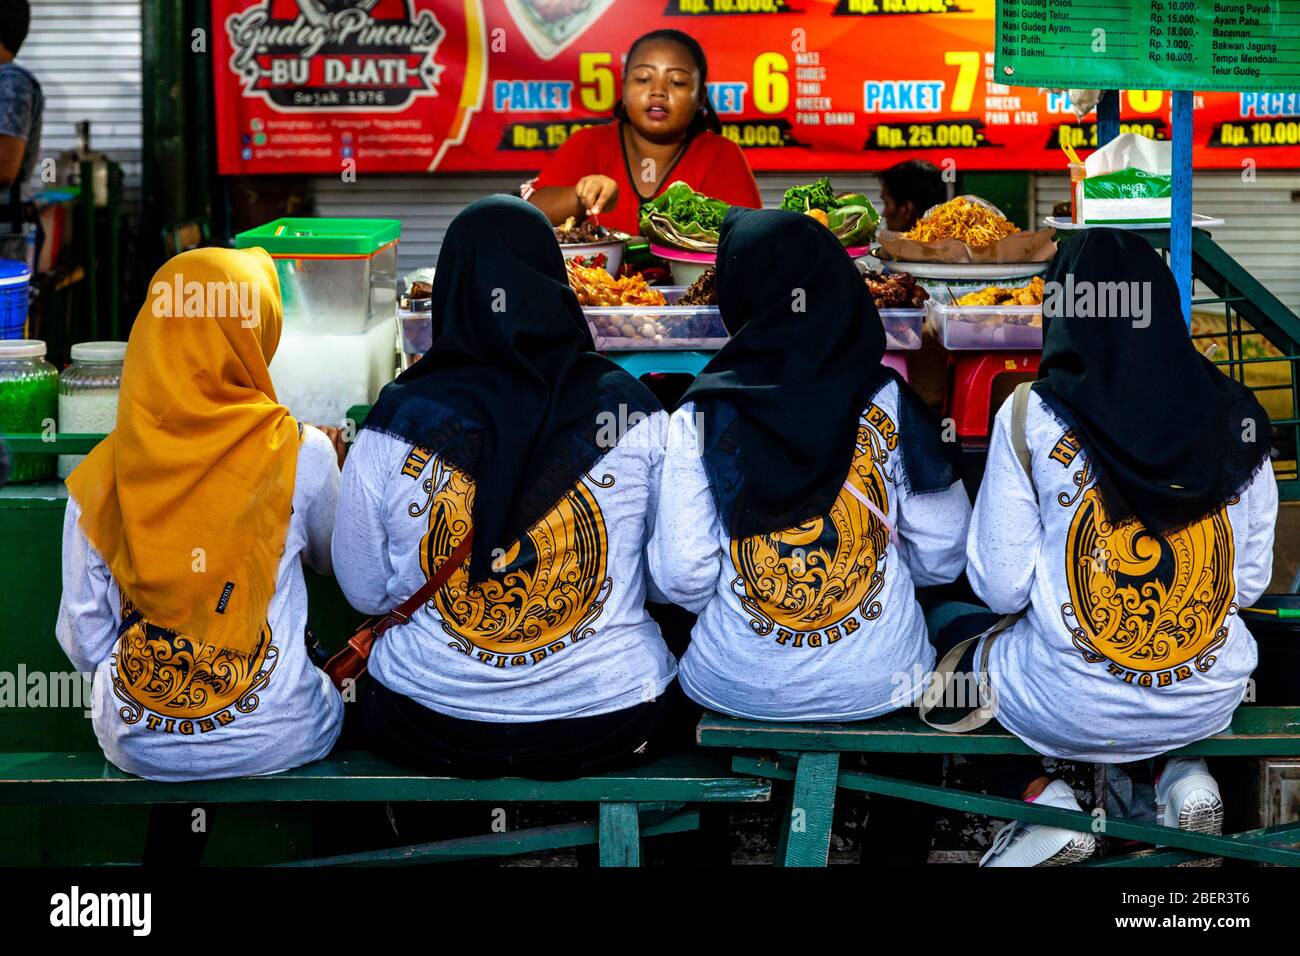 Junge indonesische Frauen essen Essen in EINEM Street Food Stand, Malioboro Street, Yogyakarta, Indonesien. Stockfoto